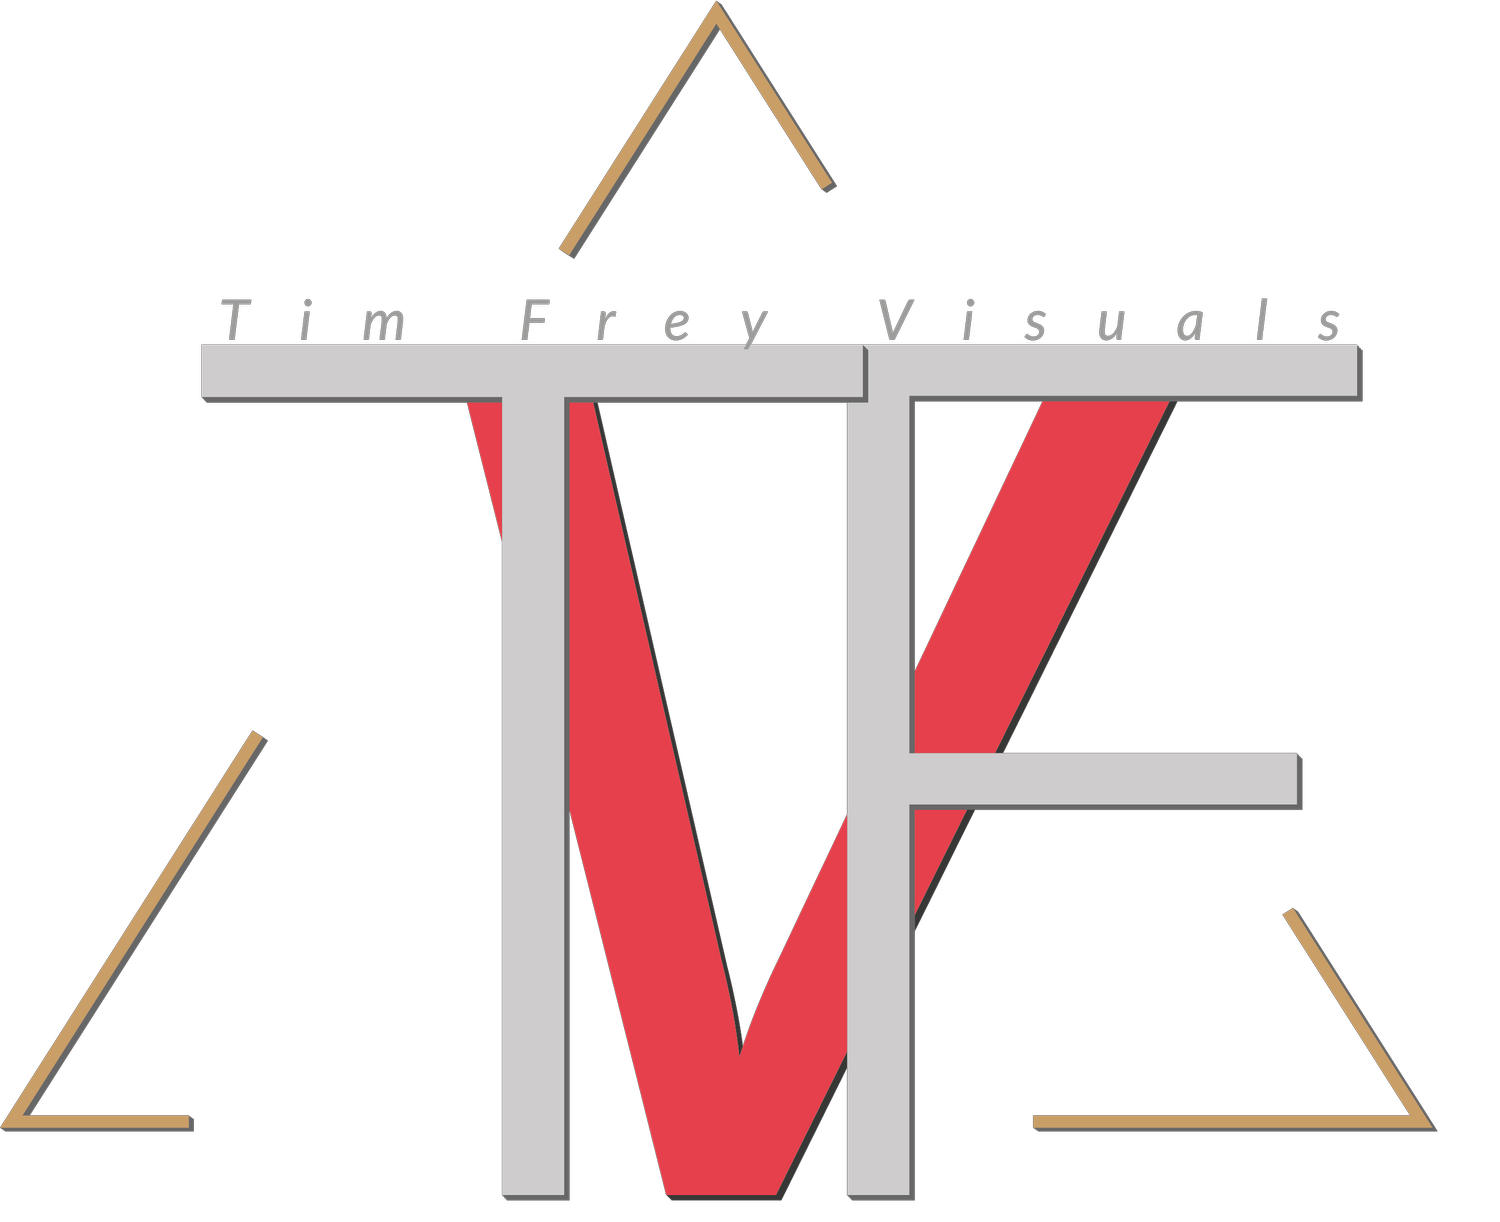 Tim Frey Visuals